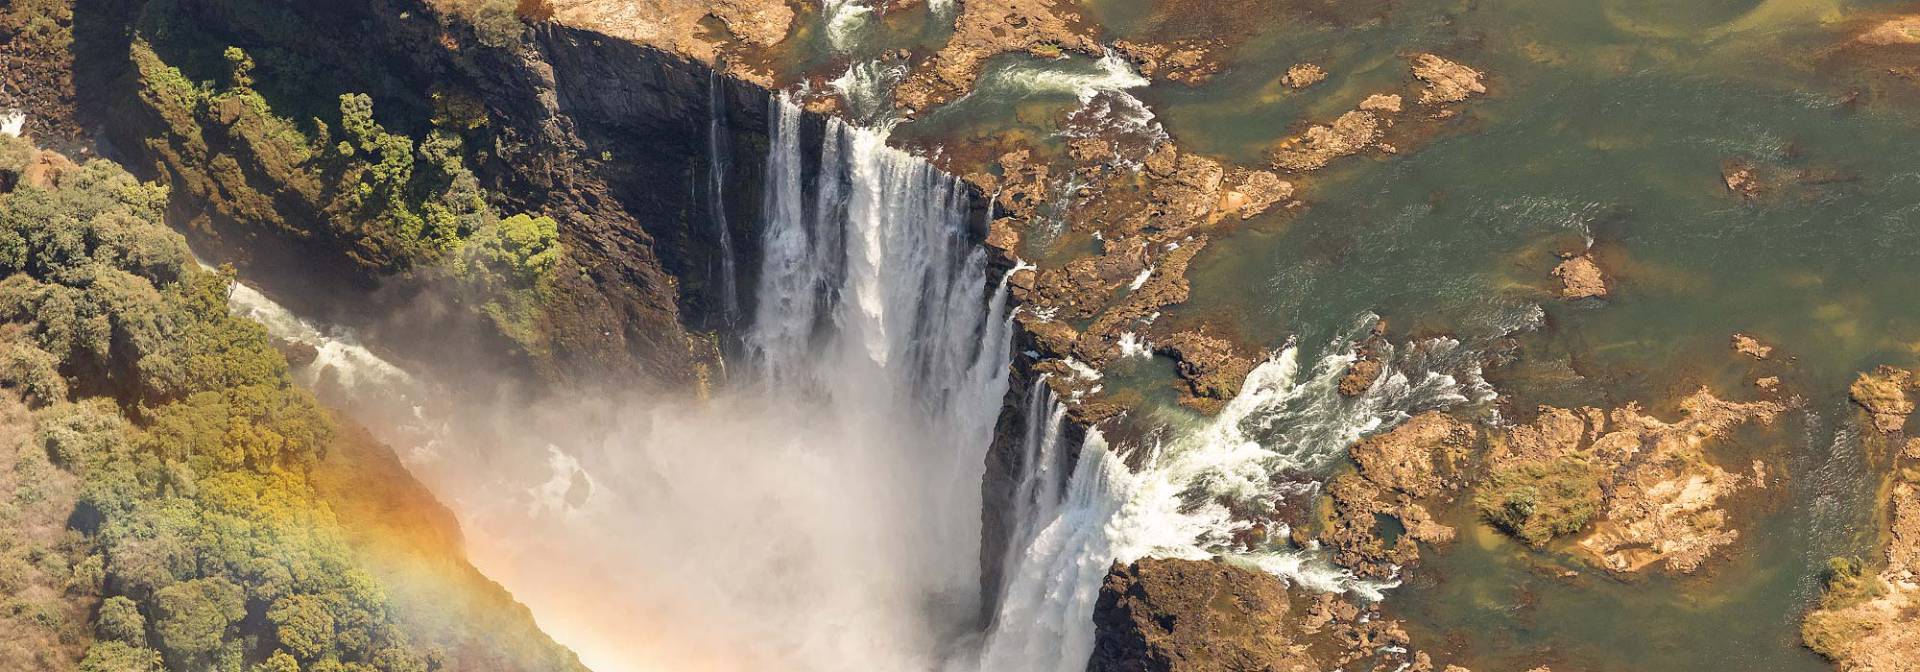 Victoria Falls zwschen Simbabwe und Sambia